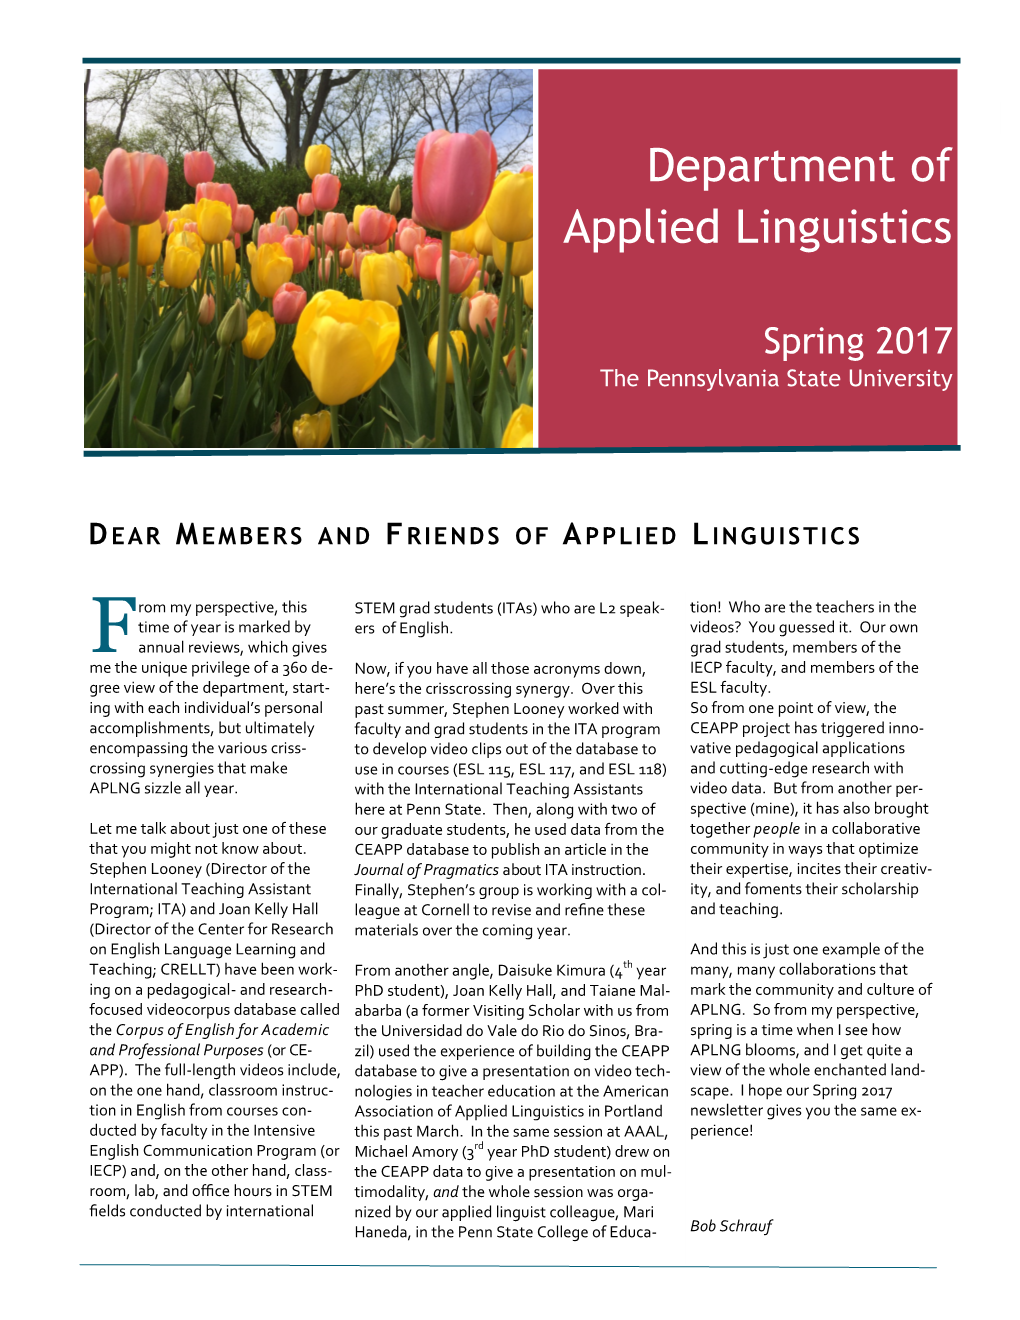 APLNG Newsletter Spring 2017